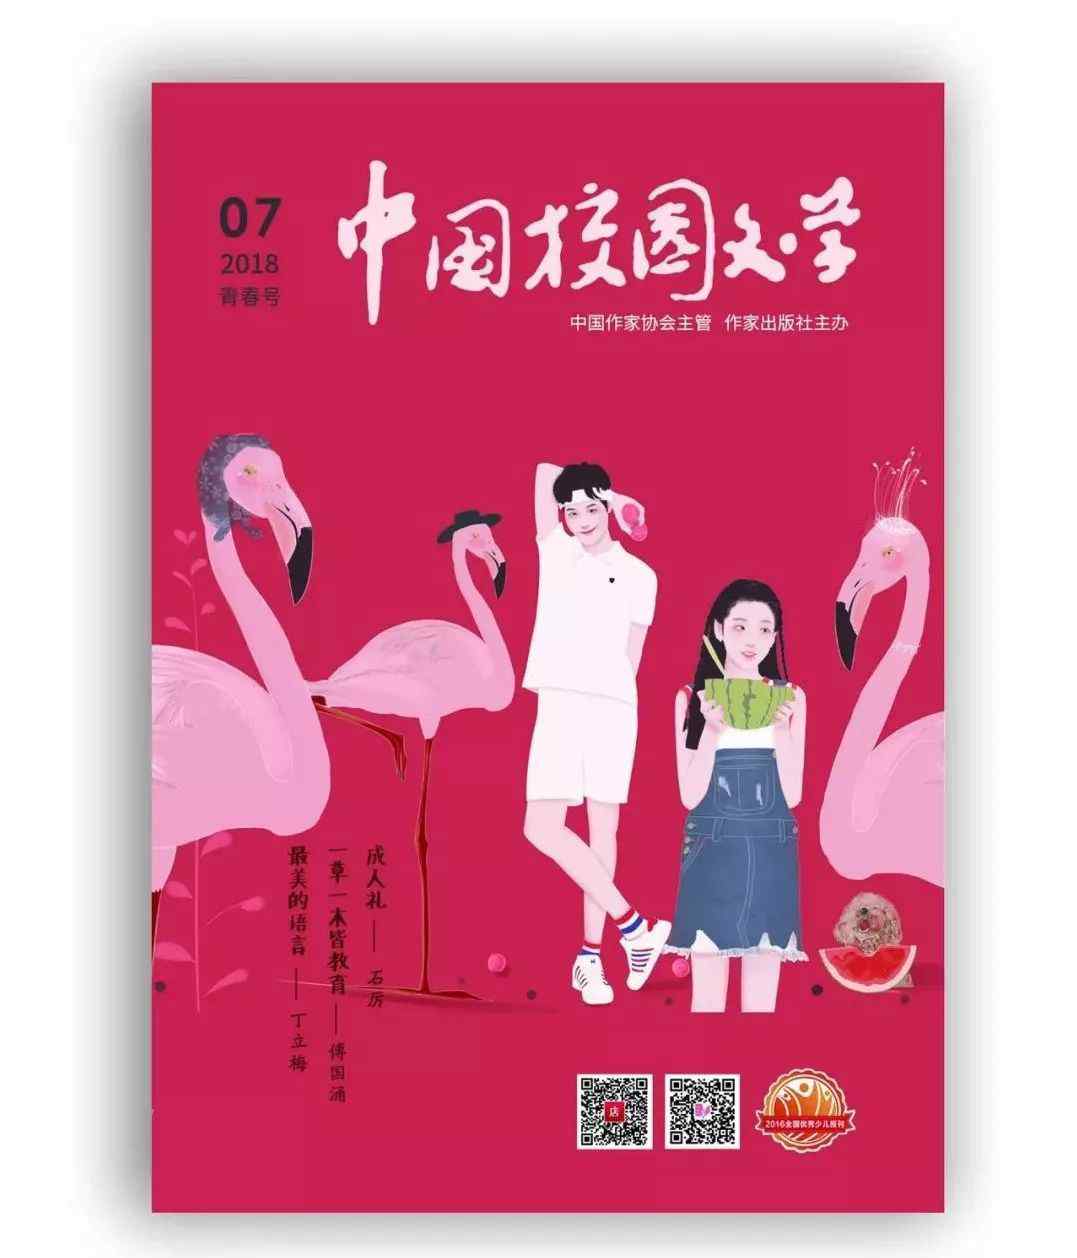 中国校园文学网 新刊 | 《中国校园文学》2018年第7期青春号目录